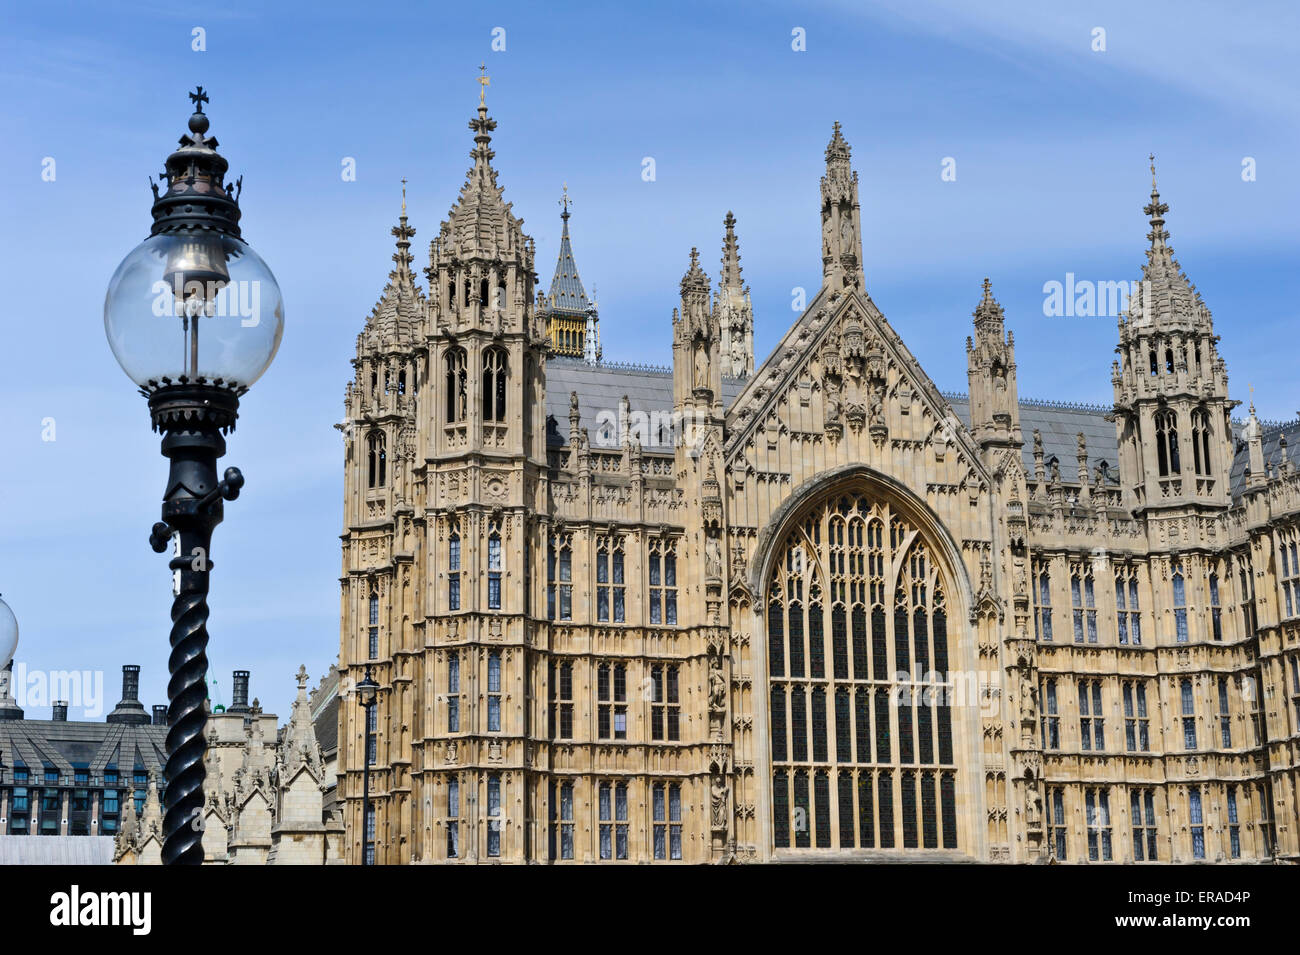 Die gotischen Stil Gebäude des Palastes von Westminster, London, England, Vereinigtes Königreich. Stockfoto